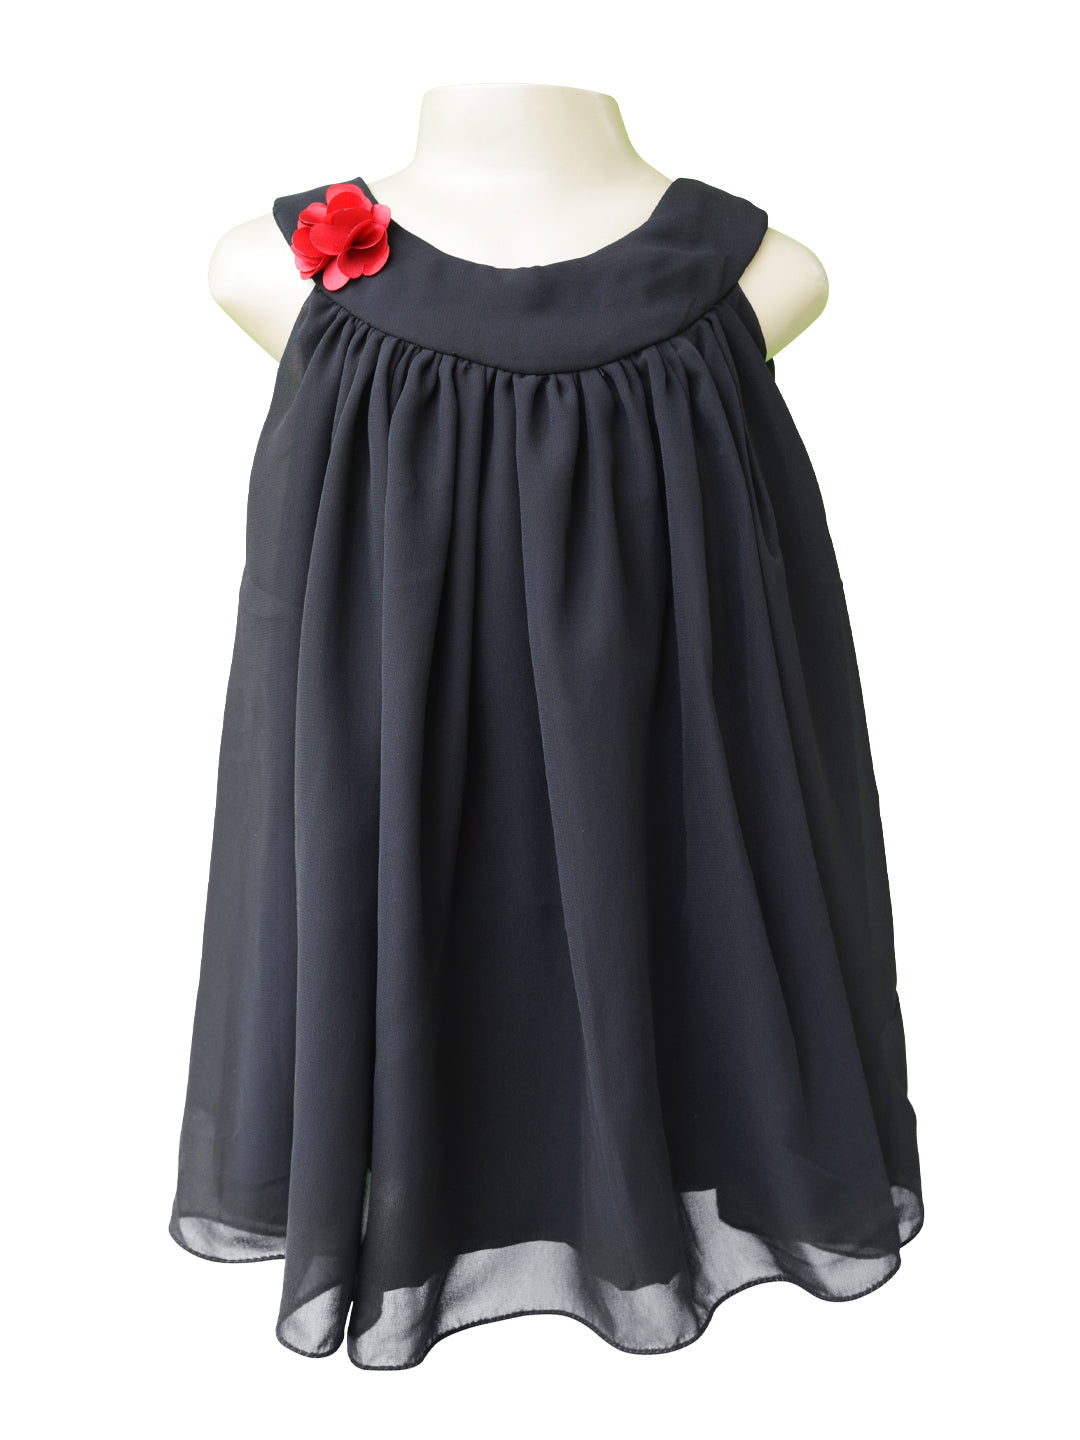 Kids wear | Black Georgette Swing Dress